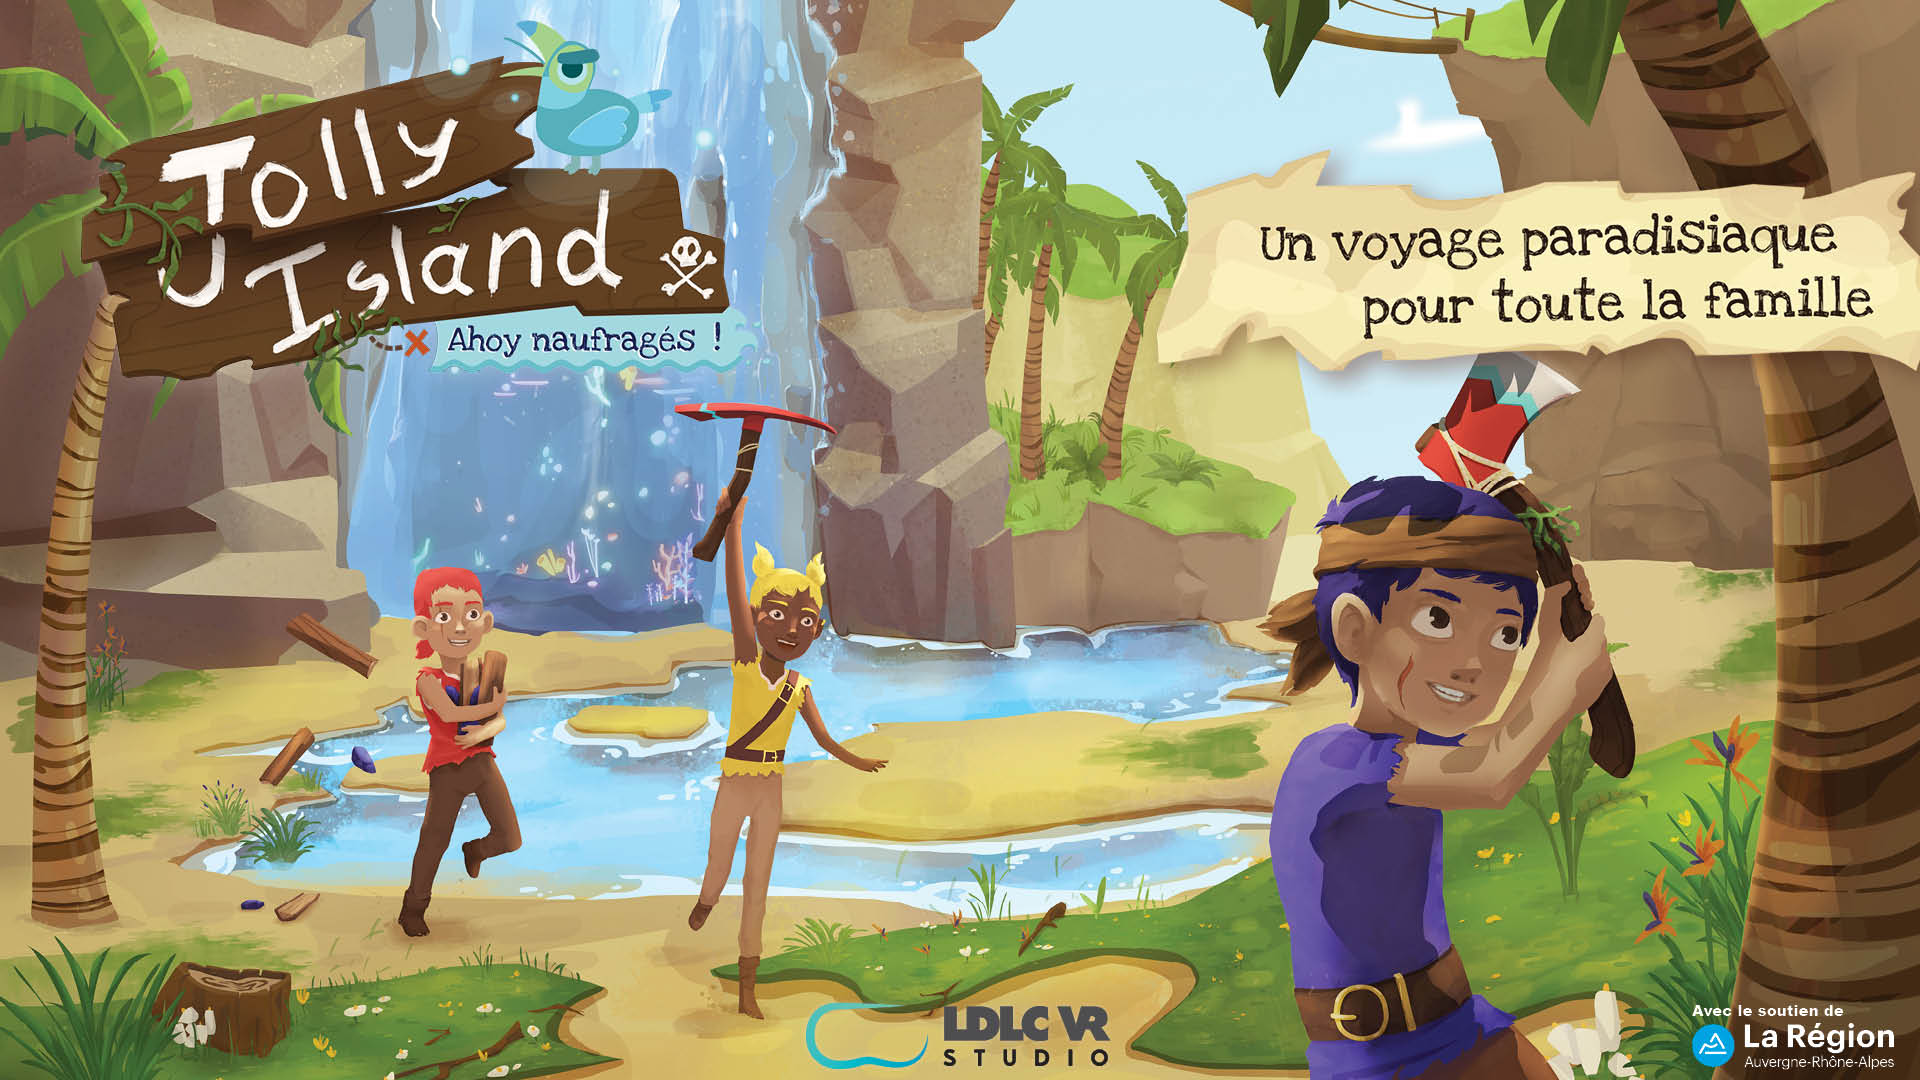 Affiche Jolly Island par LDLC VR Studio avec le soutien financier de La Région Auvergne-Rhône-Alpes